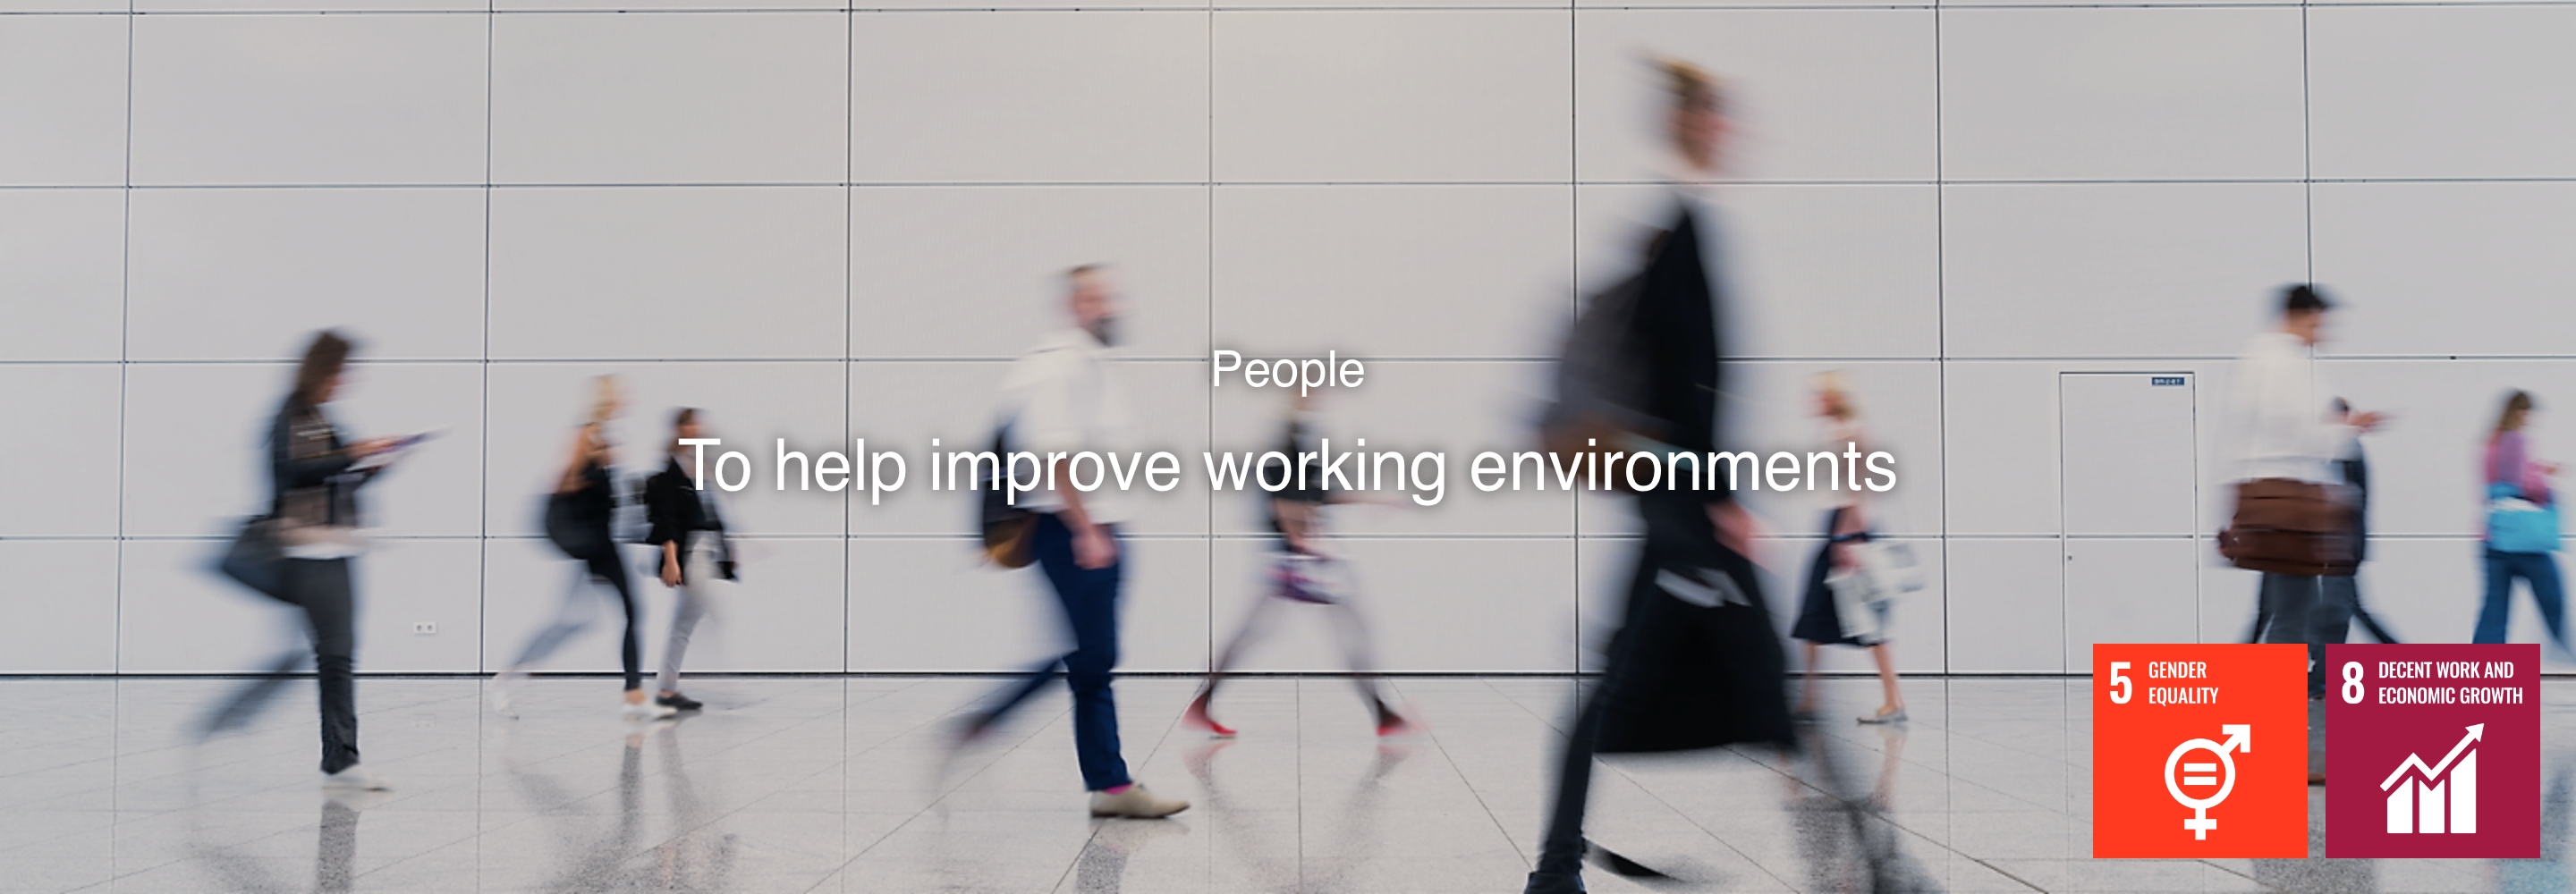 Mọi người giúp cải thiện môi trường làm việc